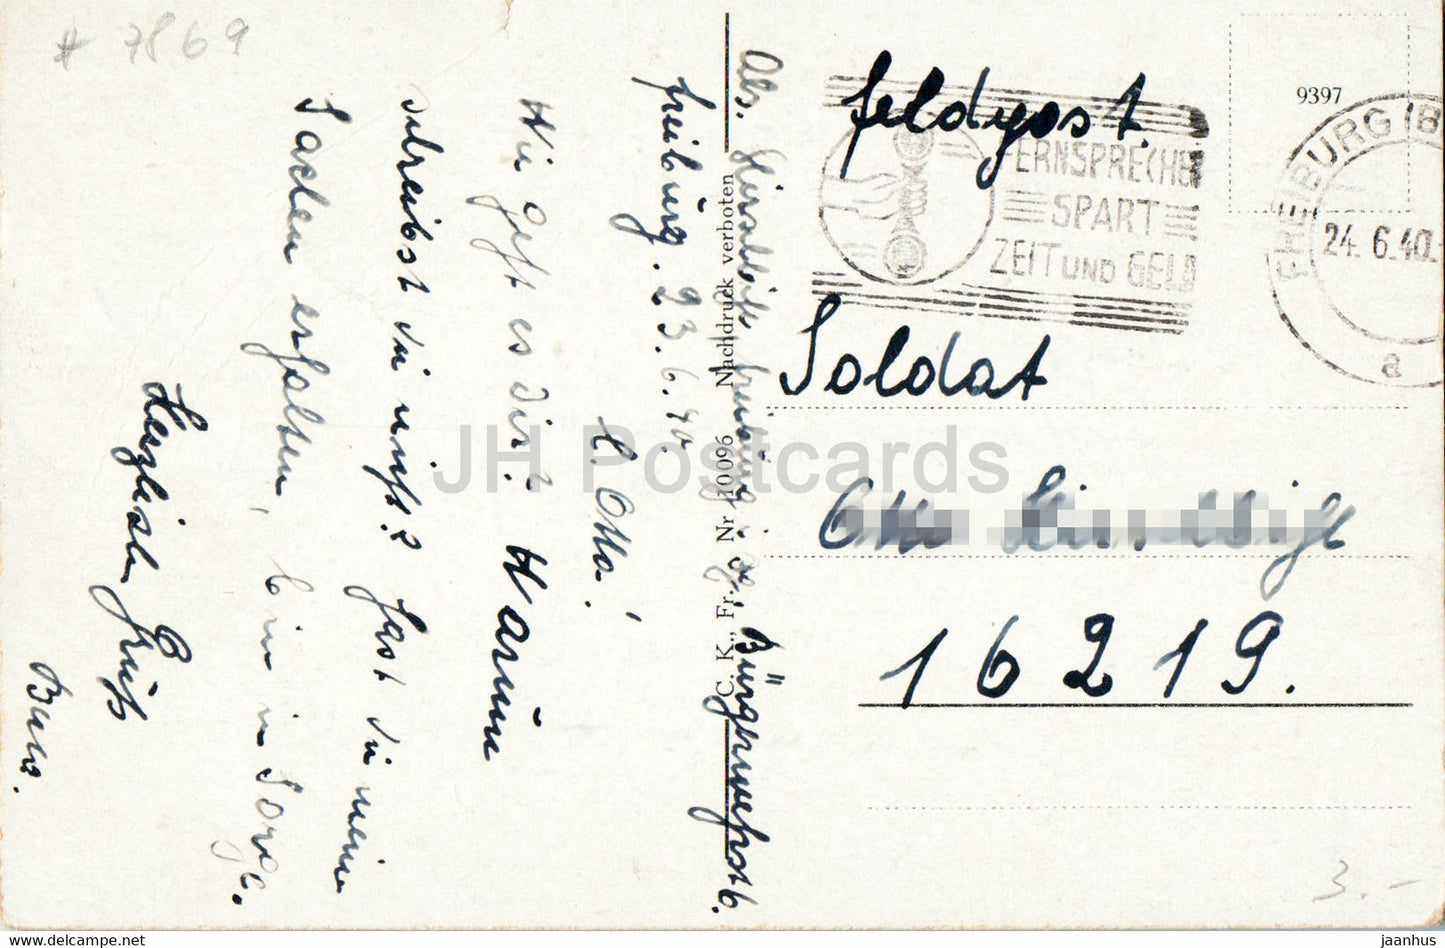 Blick ins Wiese Tal vom Feldberg aus - Wiesetal - Feldpost - military mail - old postcard - 1940 - Germany - used